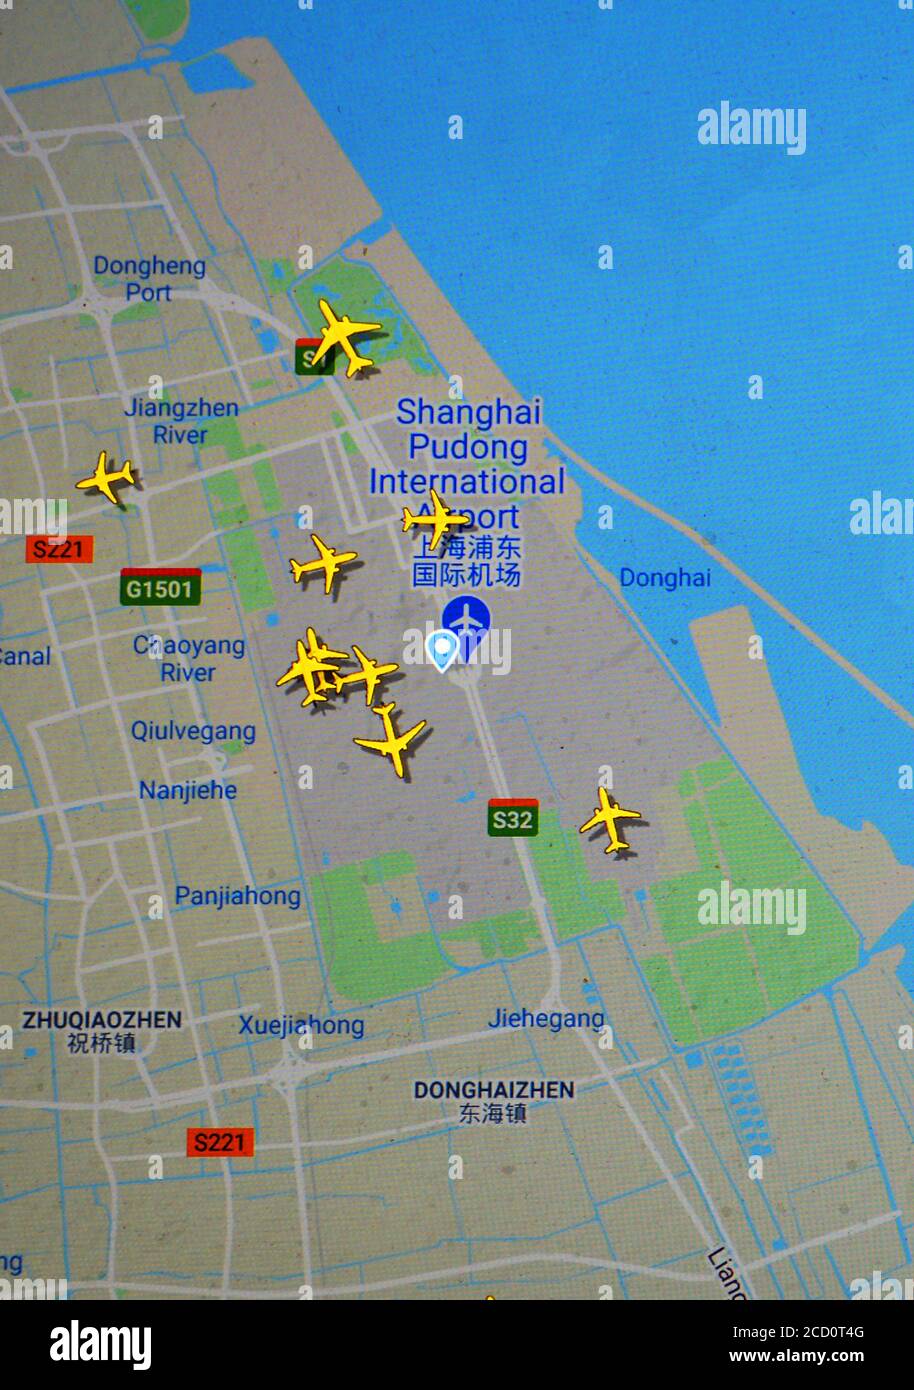 Tráfico aéreo en el aeropuerto de Shanghai Pudong (25 de agosto de 2020, UTC 09.23), en Internet con el sitio de Flightrdar 24, durante el período de la pandemia del Coronavirus Foto de stock